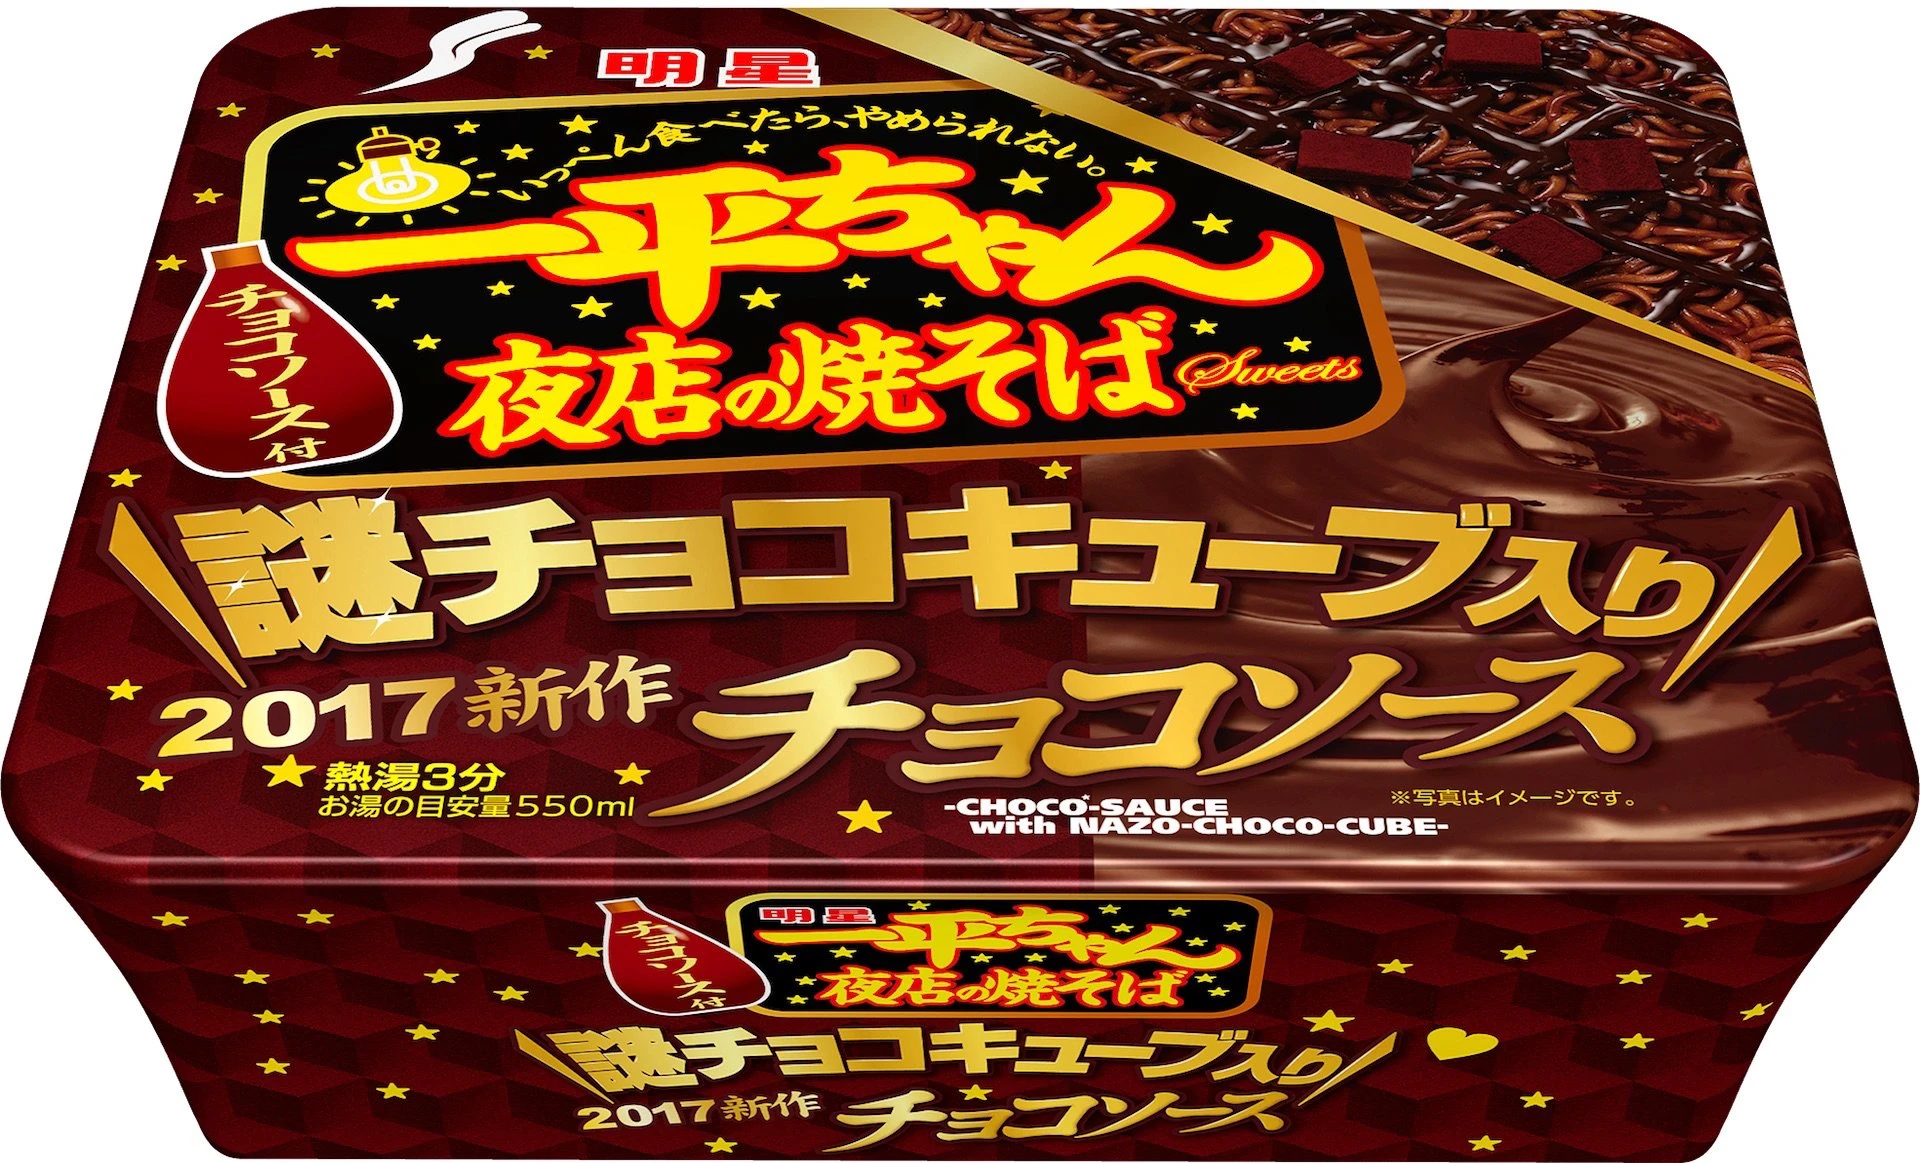 『一平ちゃんチョコソース味』！ 有名チョコメーカー監修拒否の問題作